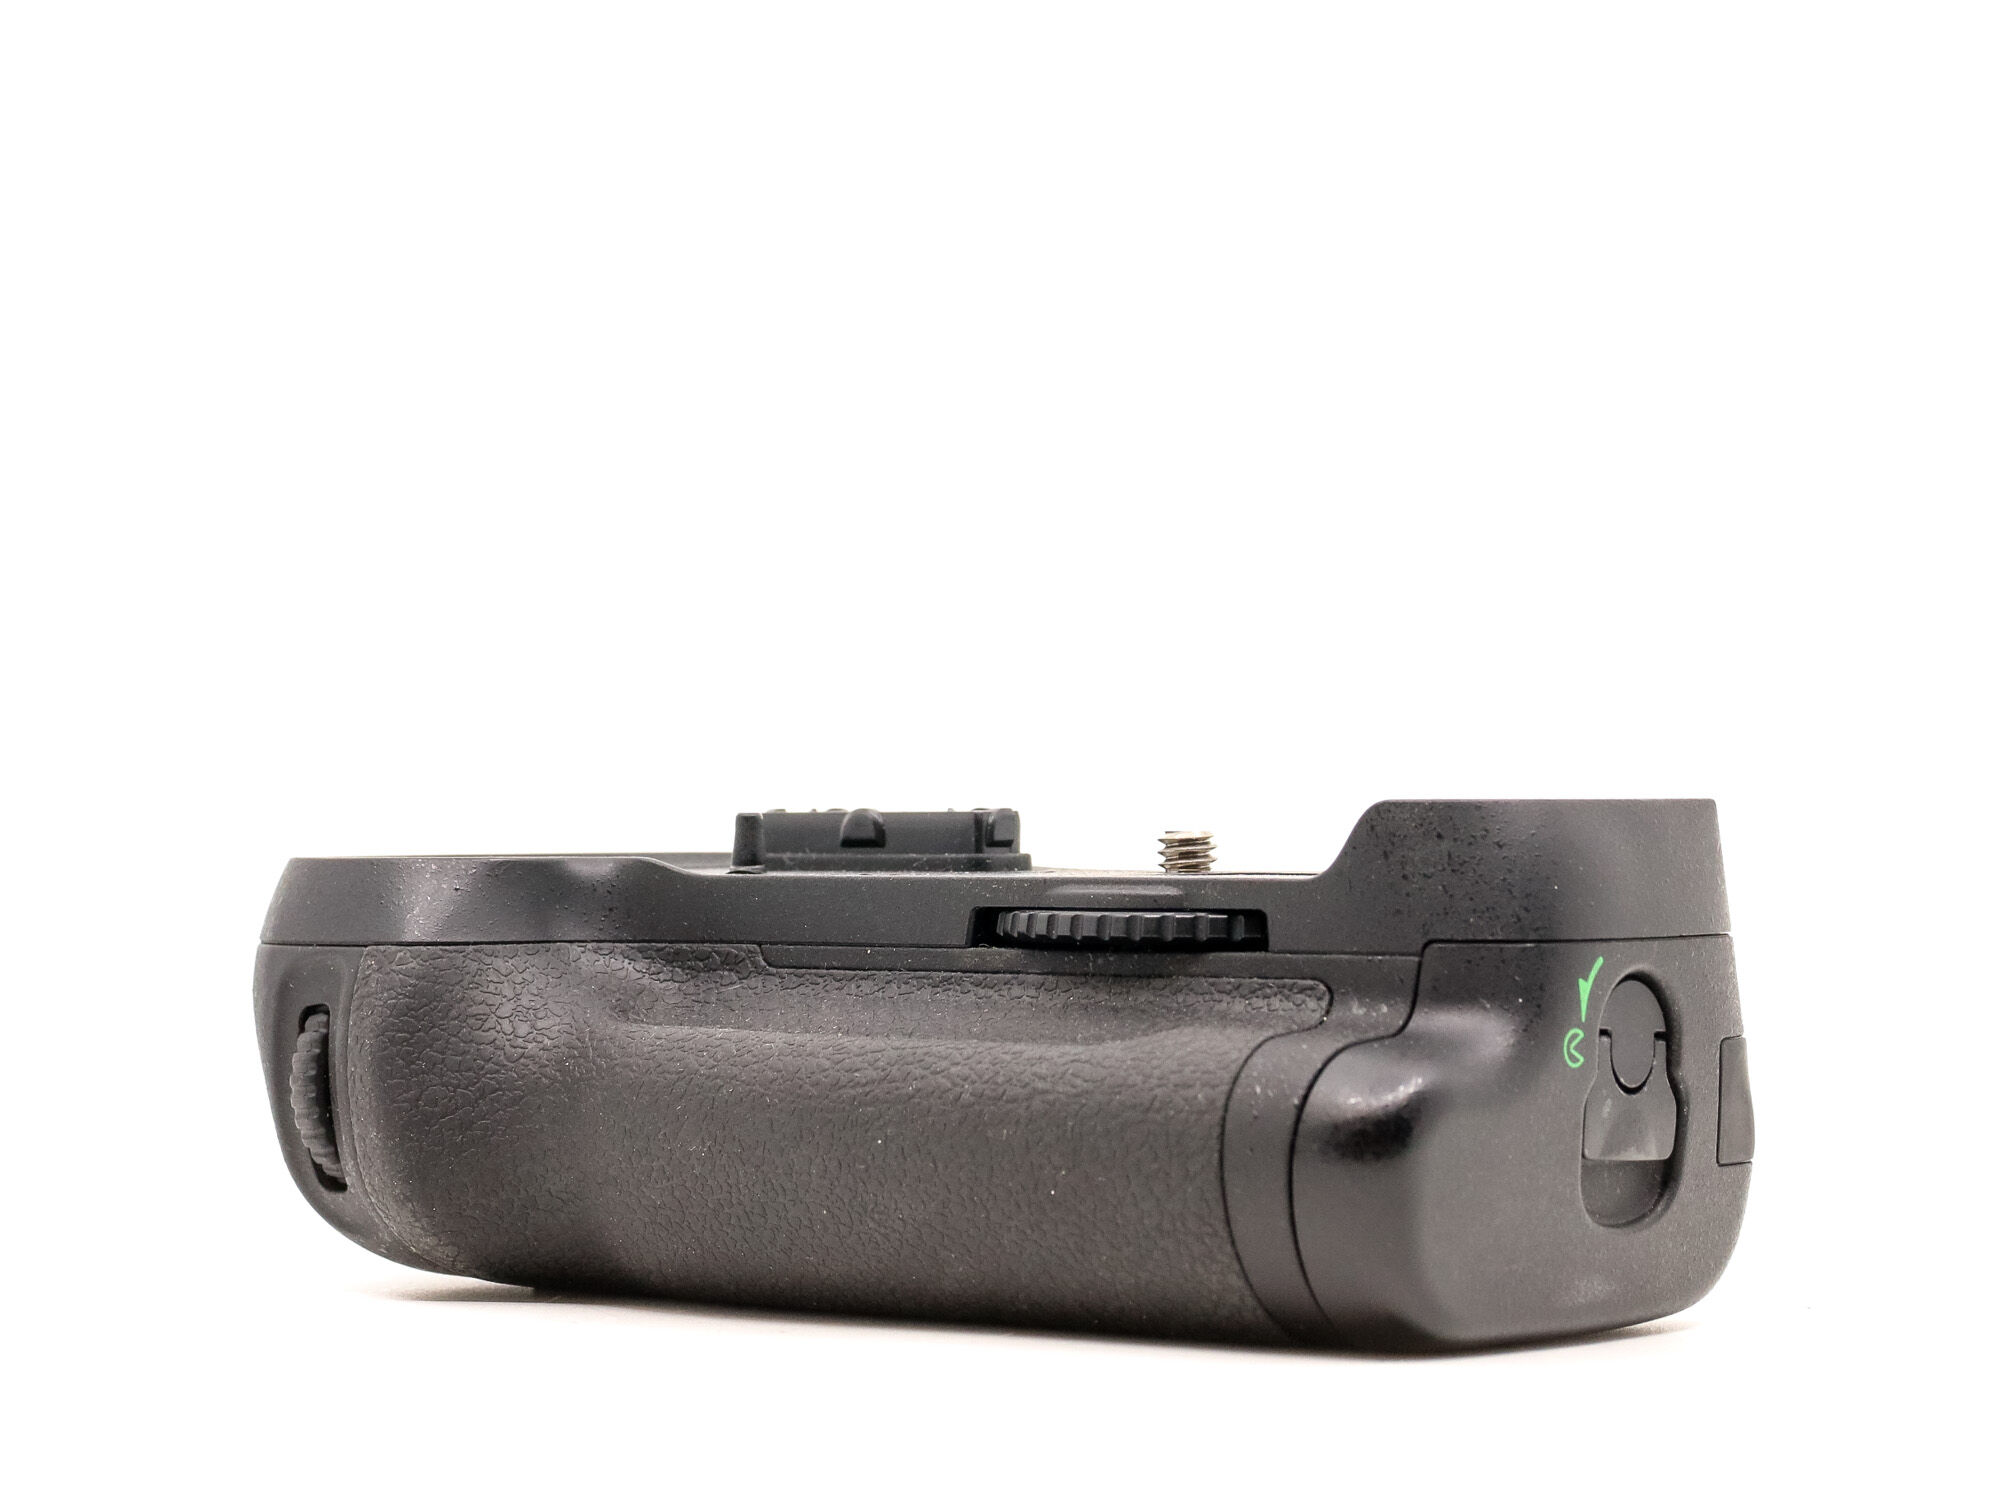 Nikon MB-D12 Battery Grip (Condition: Excellent)